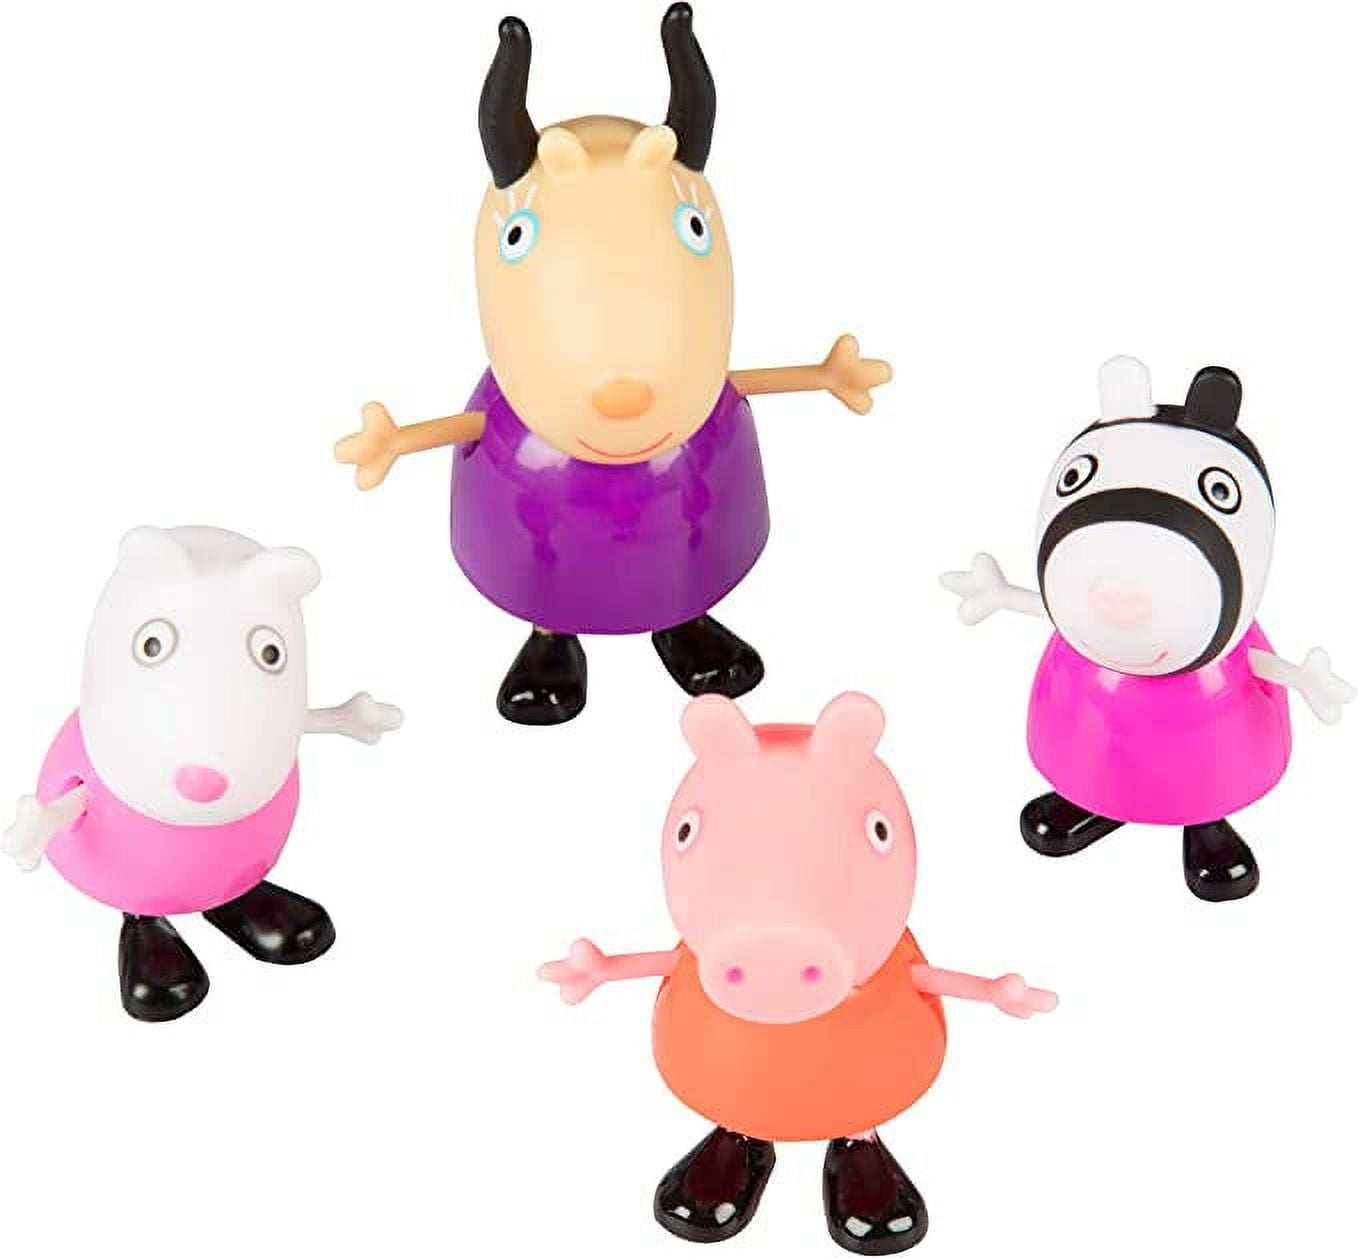 Playskool Peppa Pig Art Set - Each